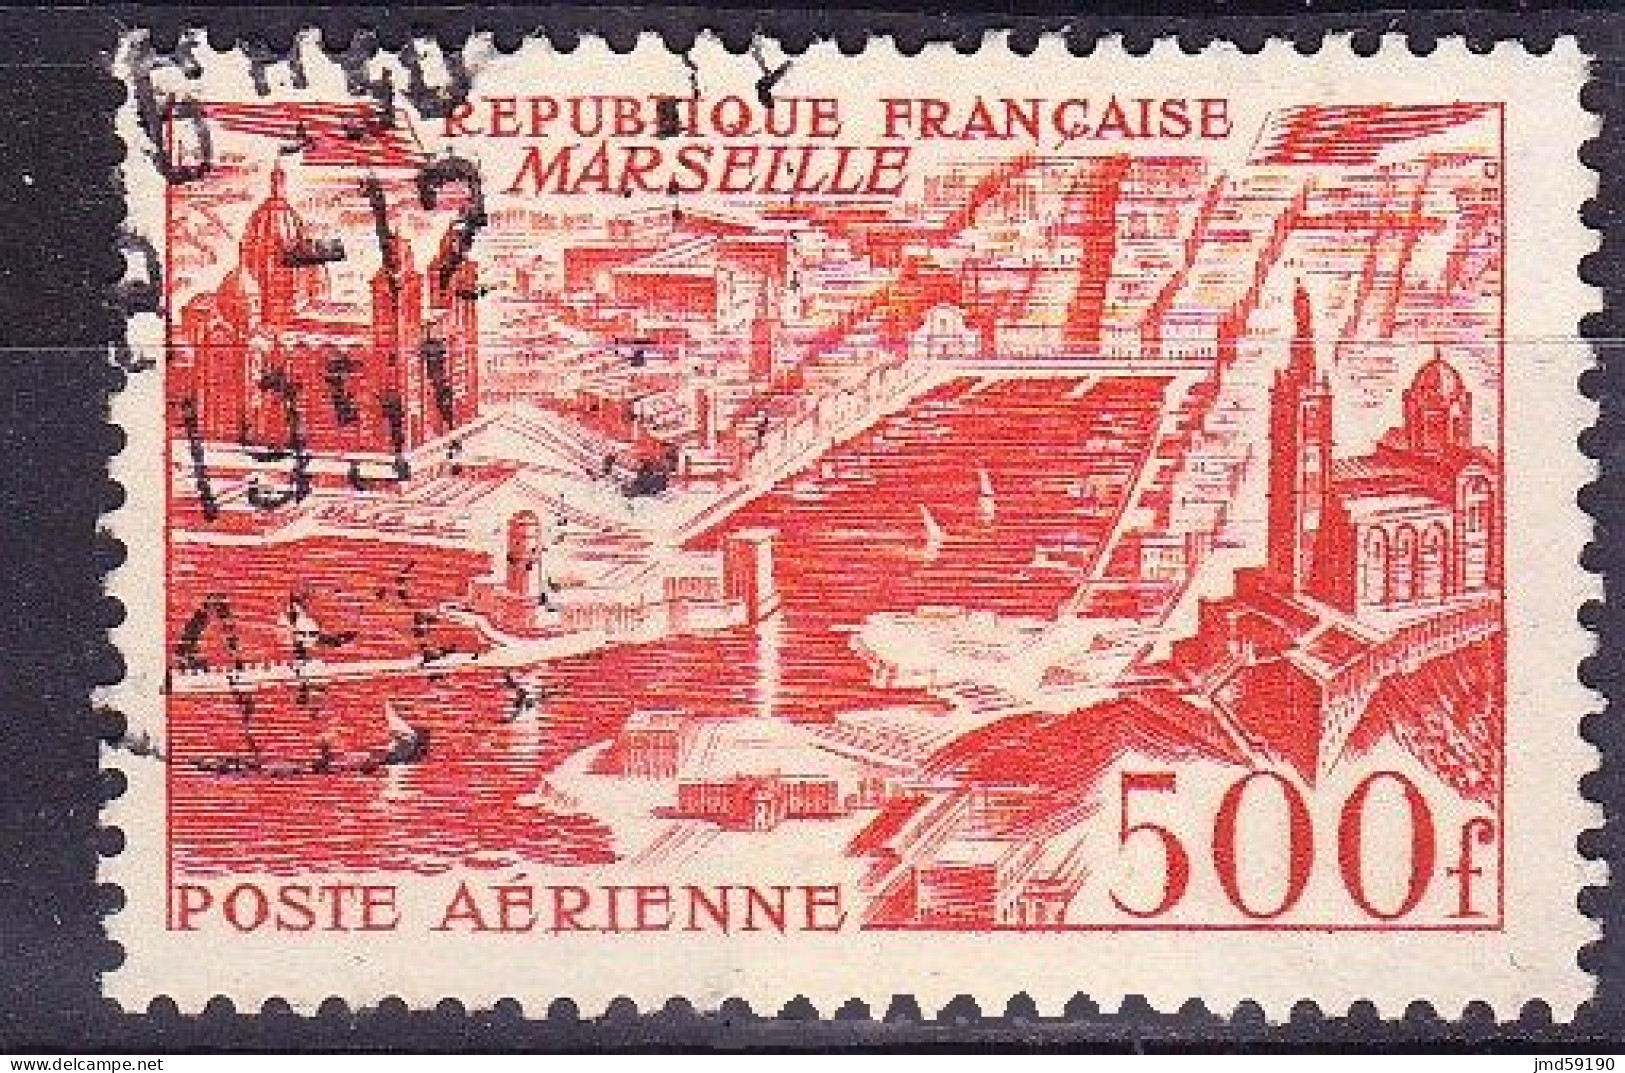 FRANCE Timbre Oblitéré Poste Aérienne N° 27, 500fr MARSEILLE - 1927-1959 Oblitérés